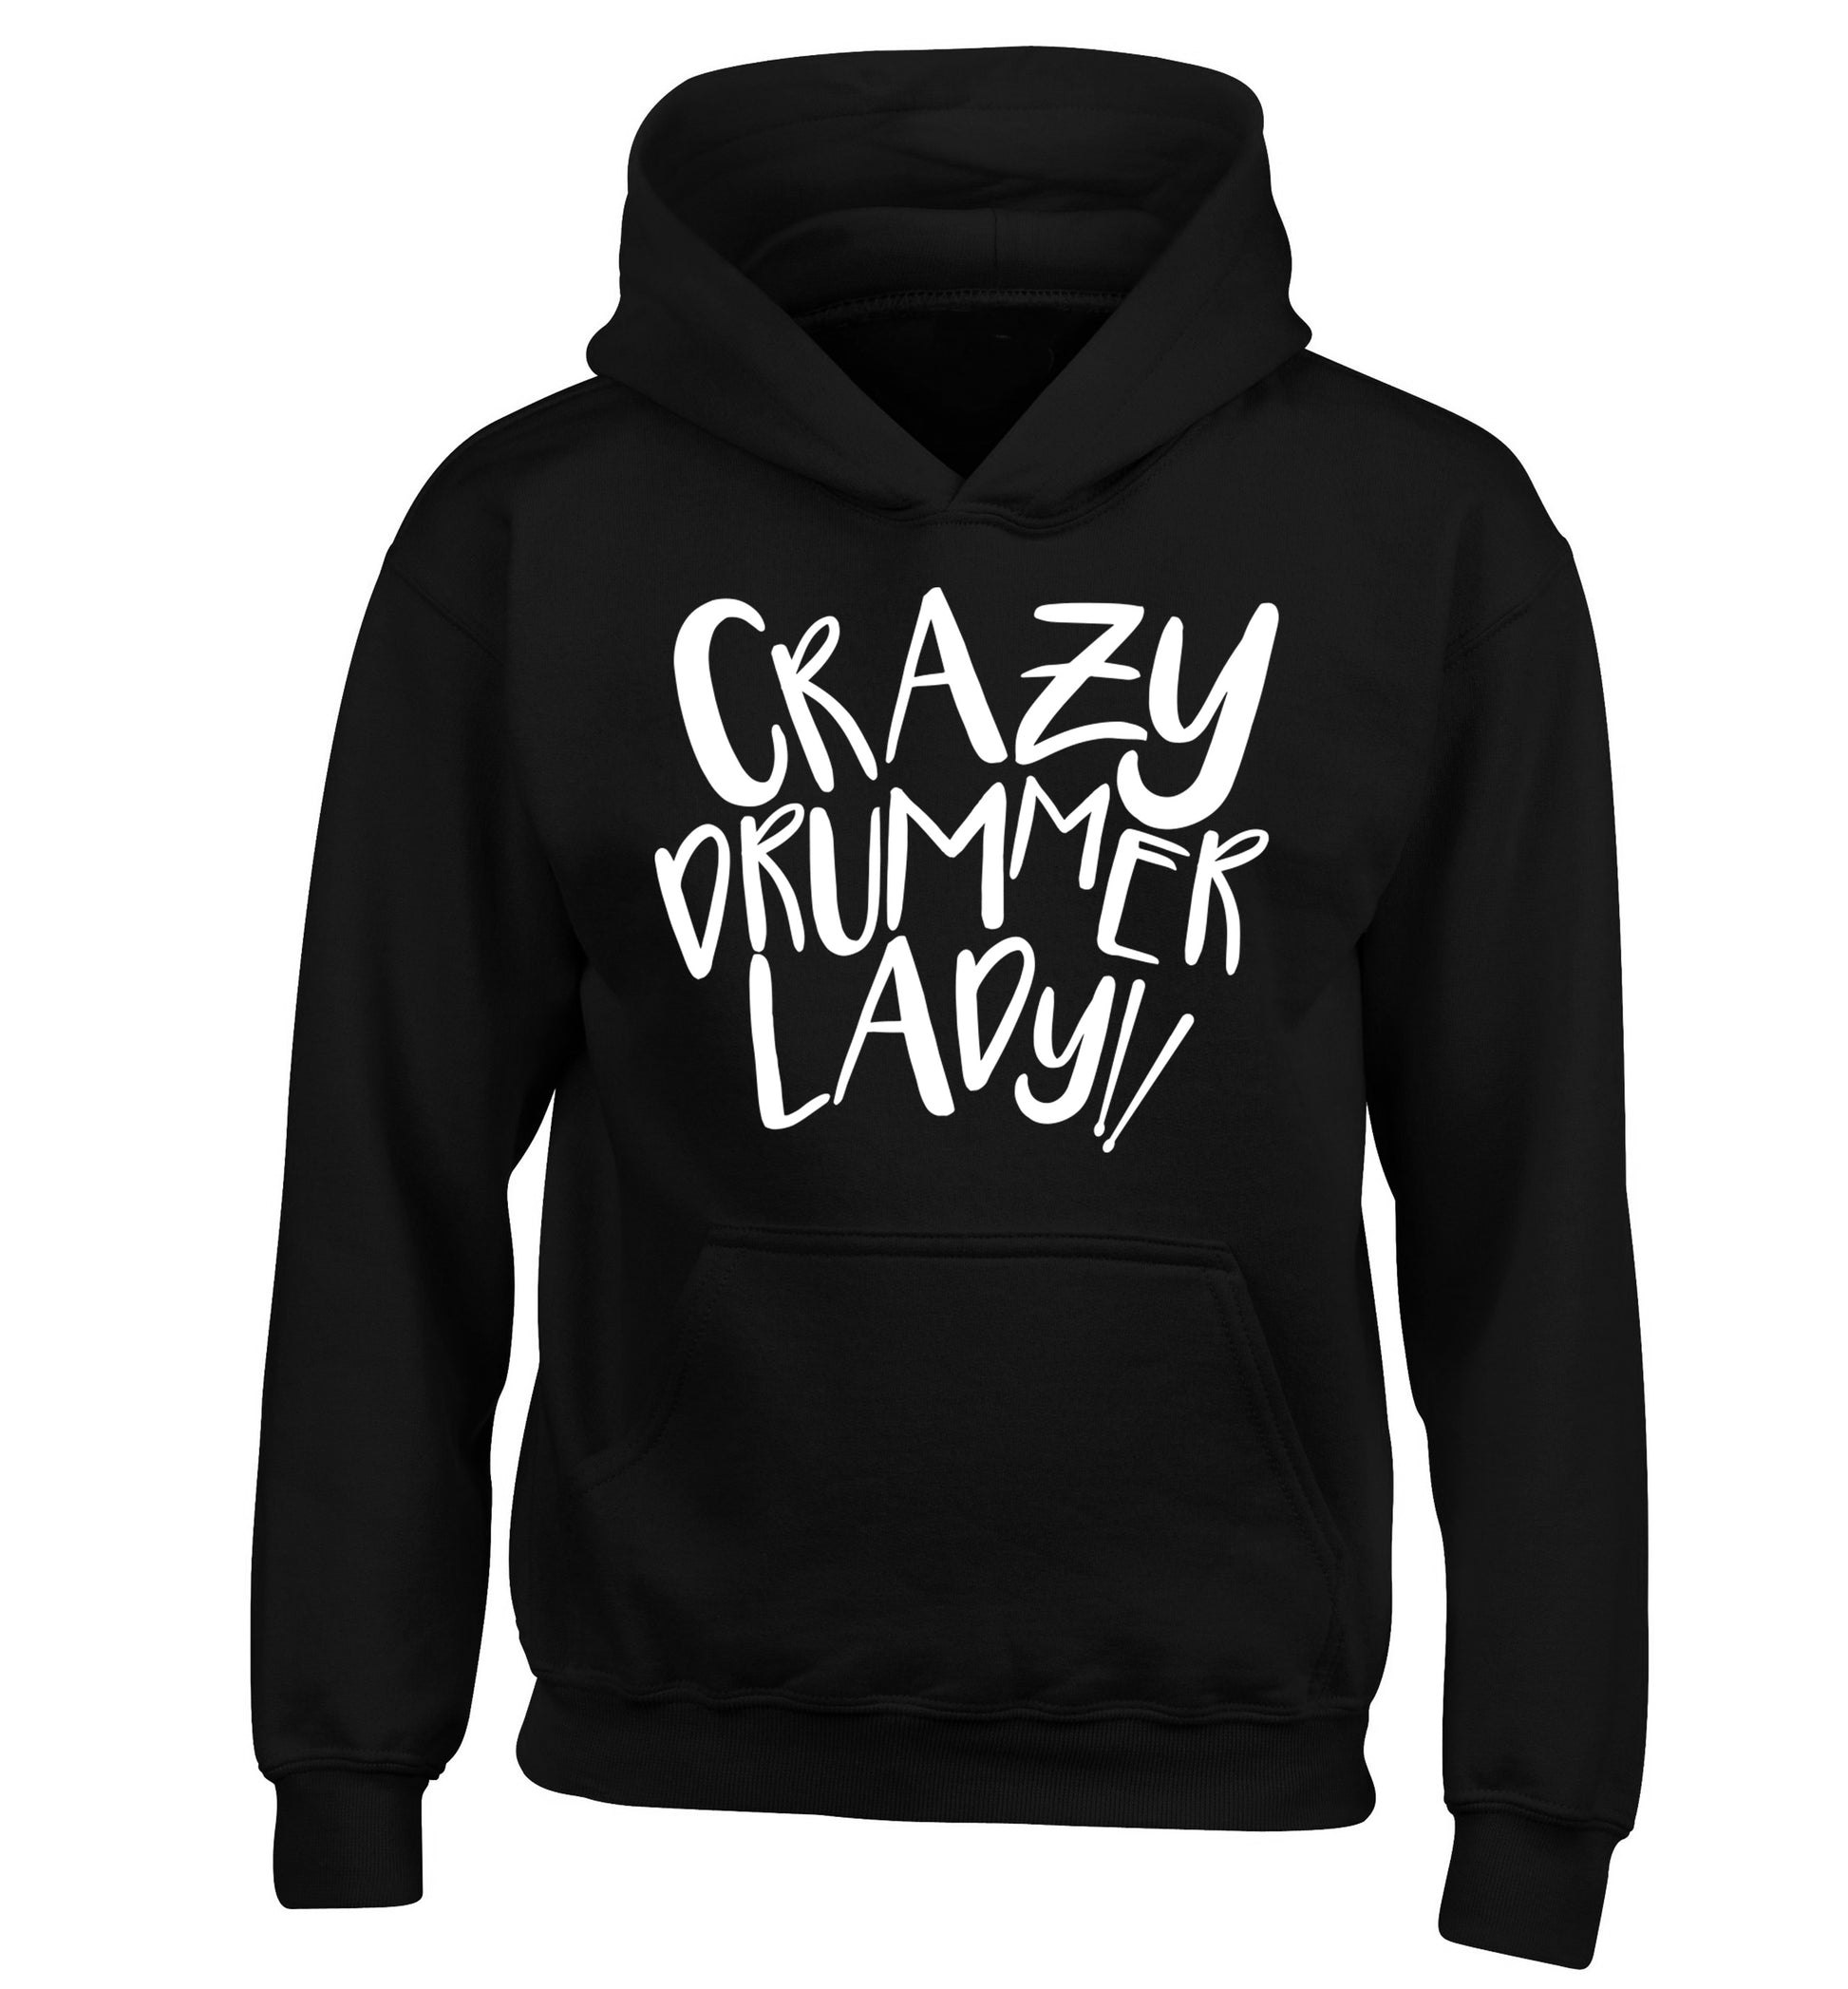 Crazy drummer lady children's black hoodie 12-14 Years